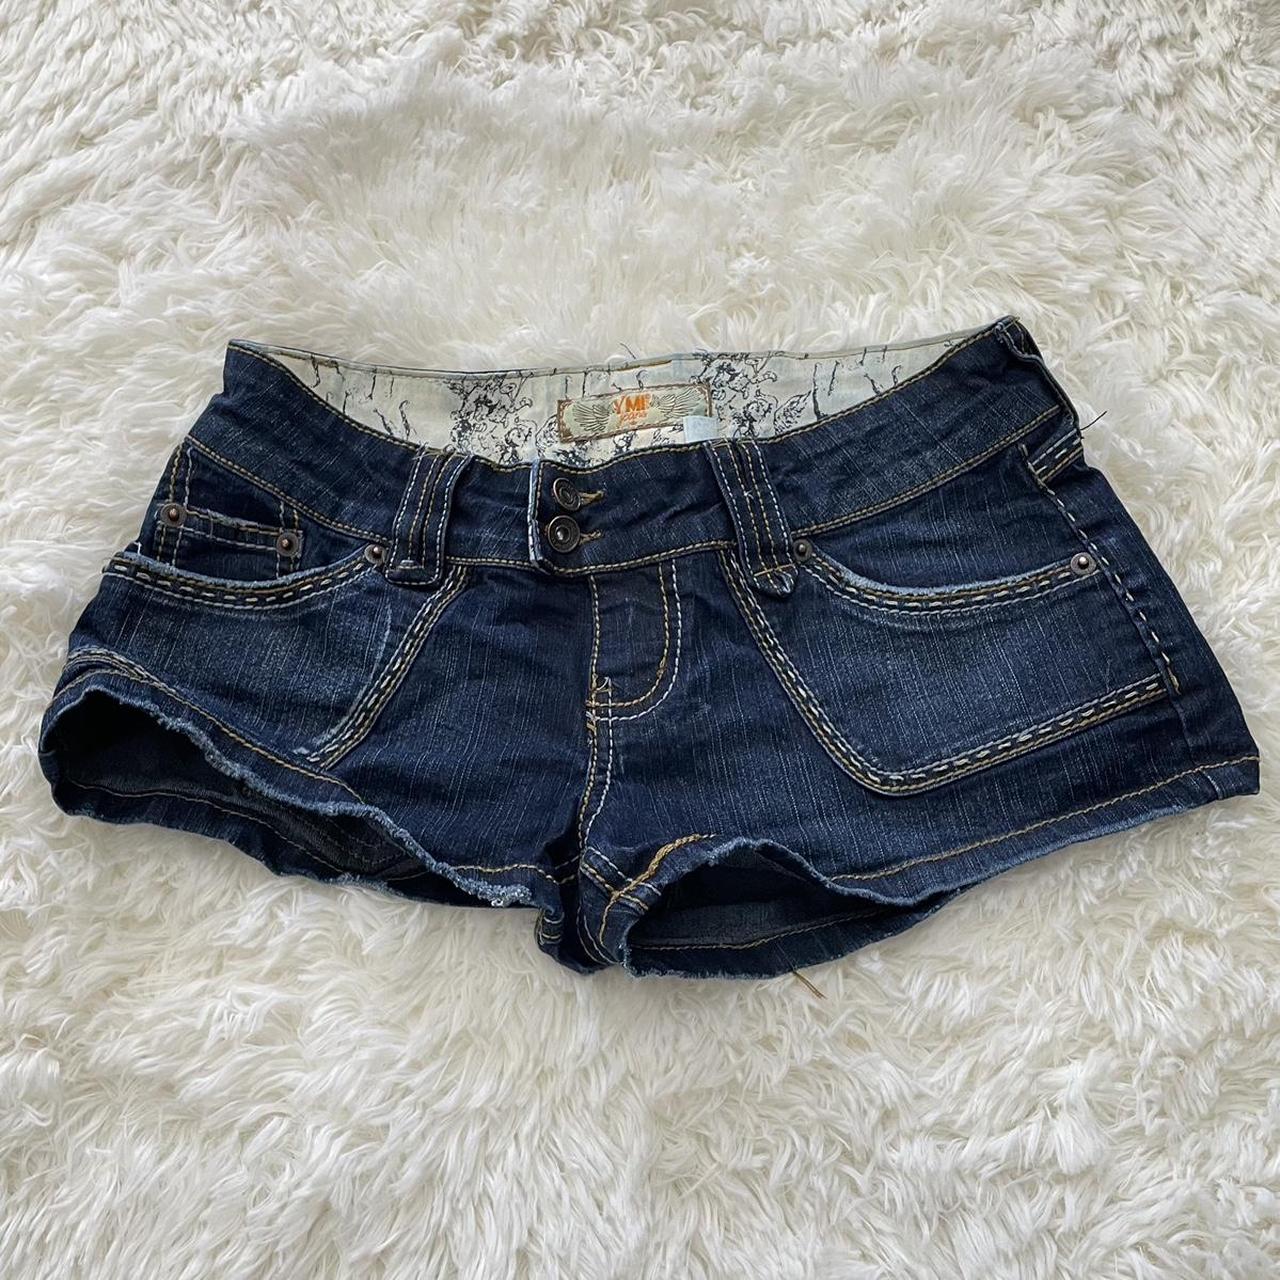 YMI Jean Booty Shorts Super cute 🥰 Size 1... - Depop